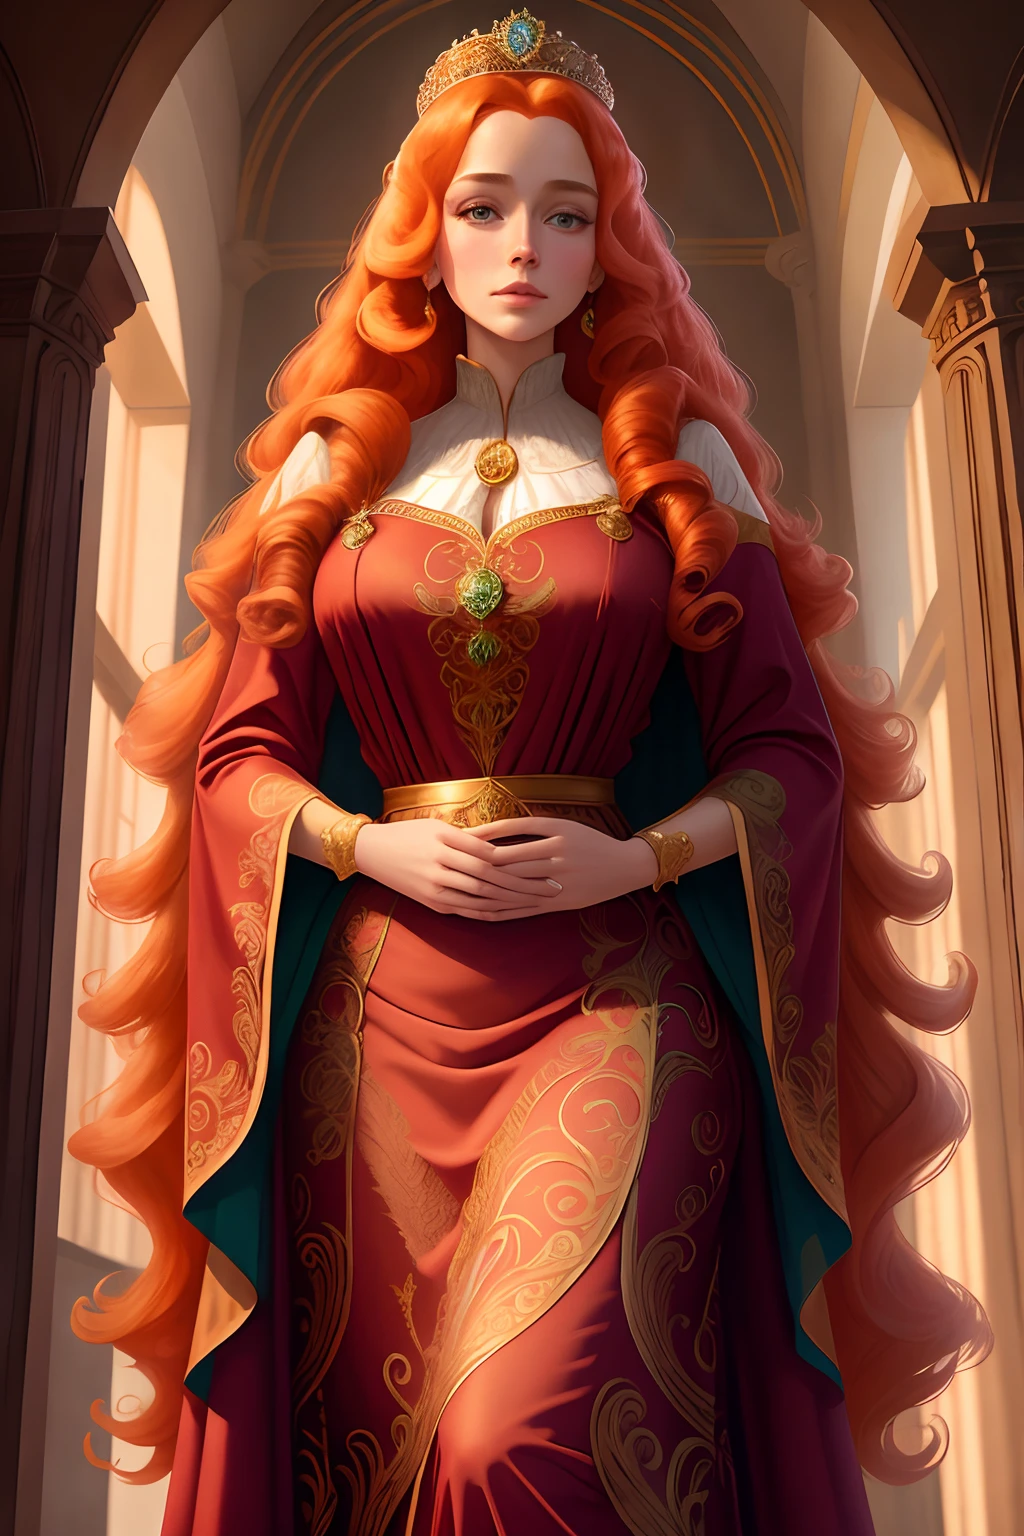 (フォリーノーバディズd15:0.8) 中世の肖像画ファンタジー (王族:1.1) 長さ [ショウガ|ブロンド] wavy hair princess glorious elaborate ornate royal emerald robes tiara gems standing in a 詳細 luxurious stone castle Game of Thrones Hogwarts bright morning light from window, (傑作:1.2) (最高品質) (詳細) (複雑な) (8k) (高解像度) (壁紙) (映画照明) (シャープなフォーカス)